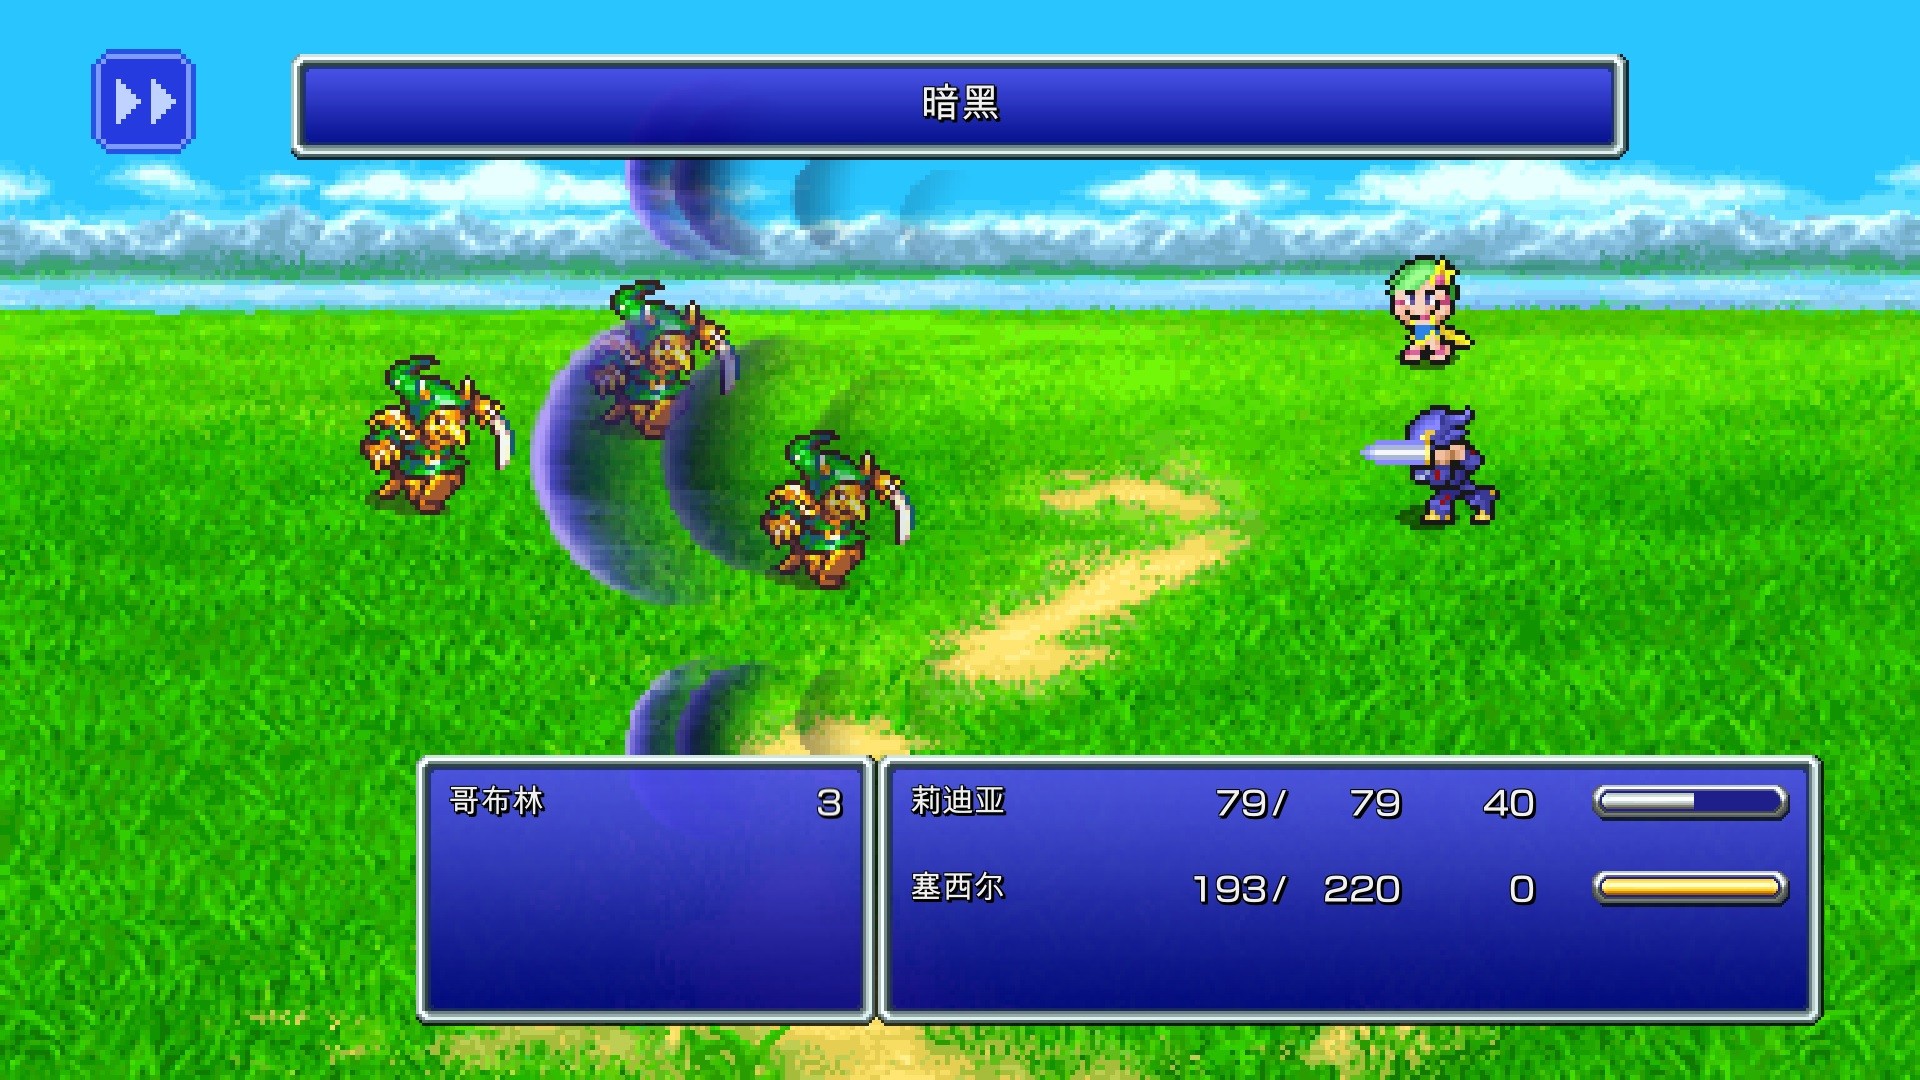 《最终幻想4像素重制版》现已上线 支持简体中文